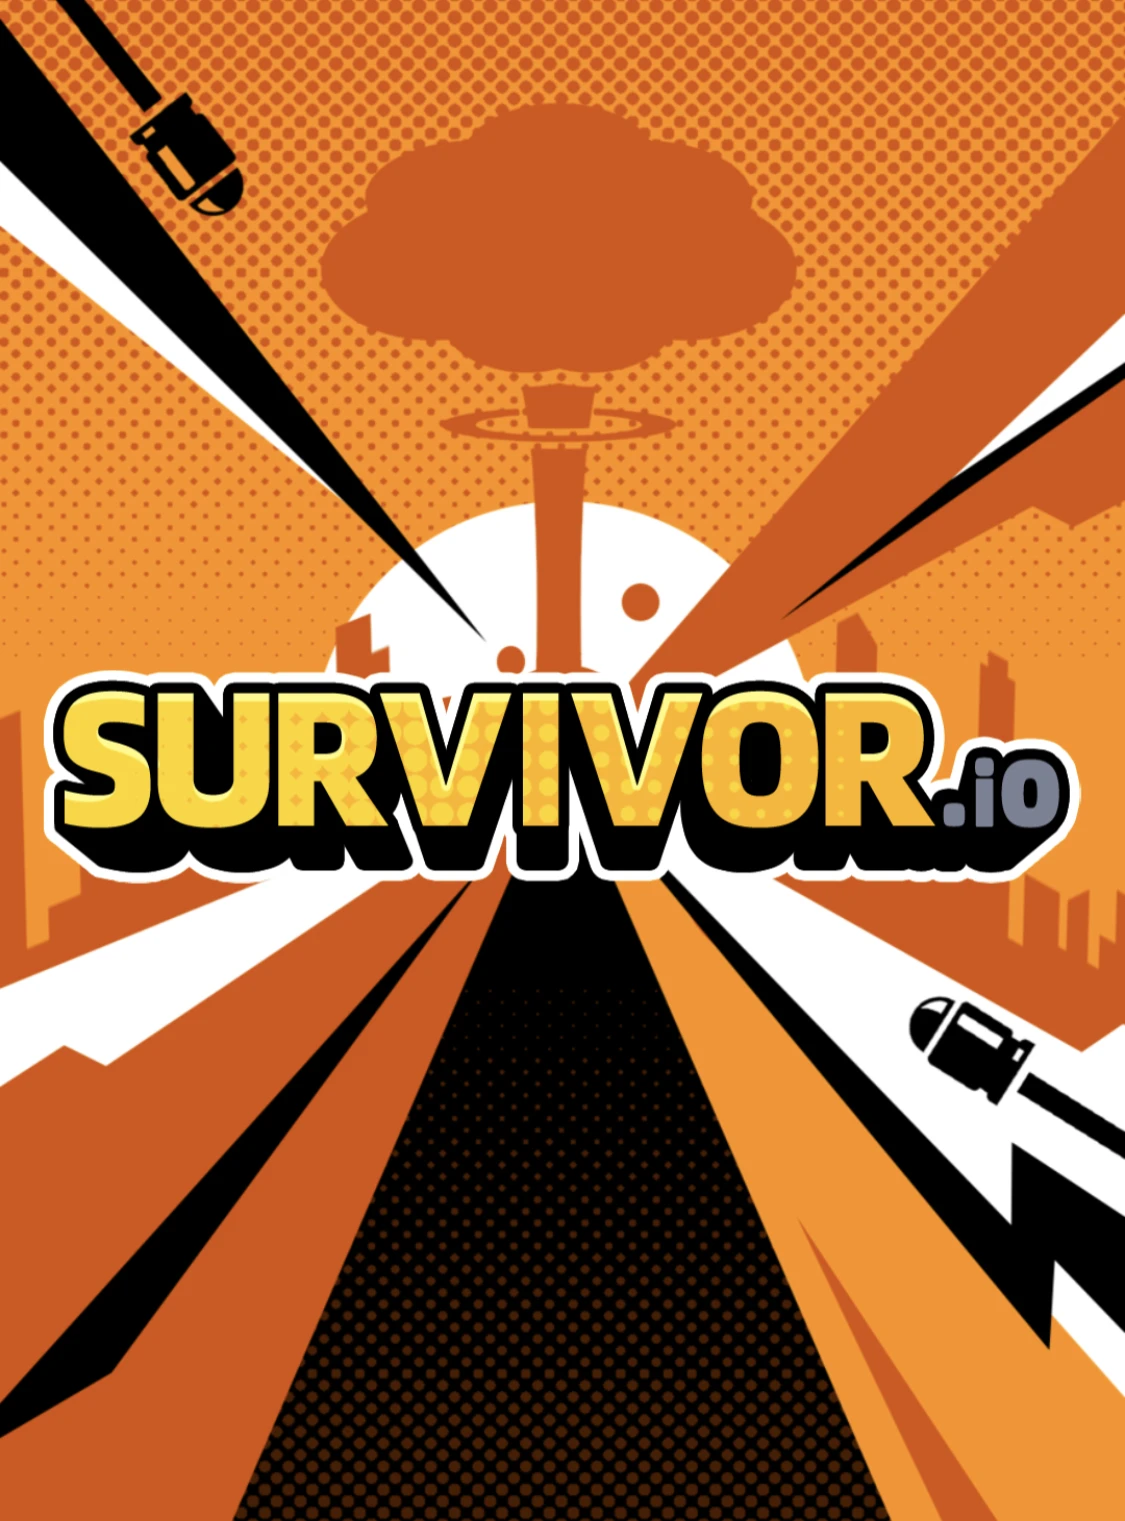 Survivor!.io 3 NEW PROMO Codes!! 